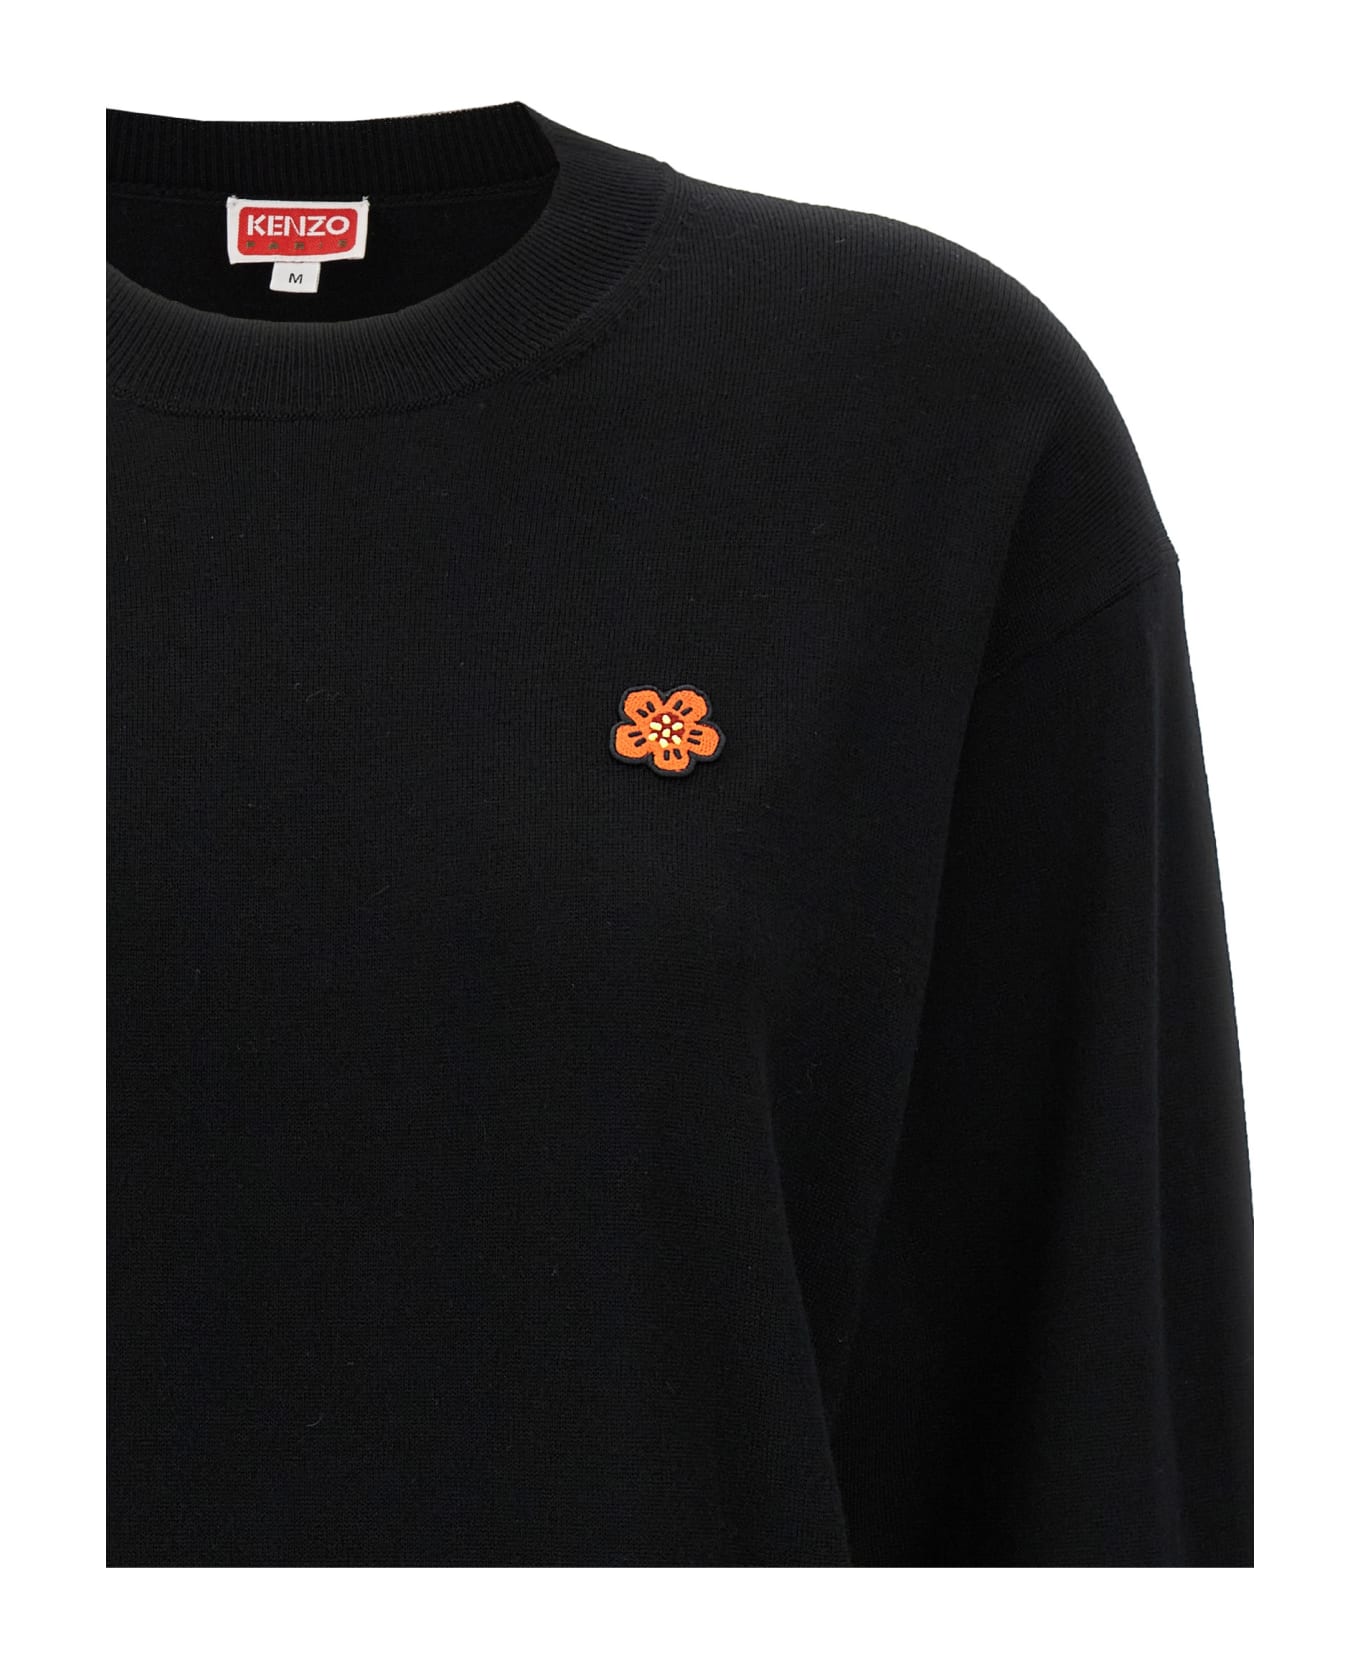 Kenzo 'boke Crest' Sweater - Black   ニットウェア